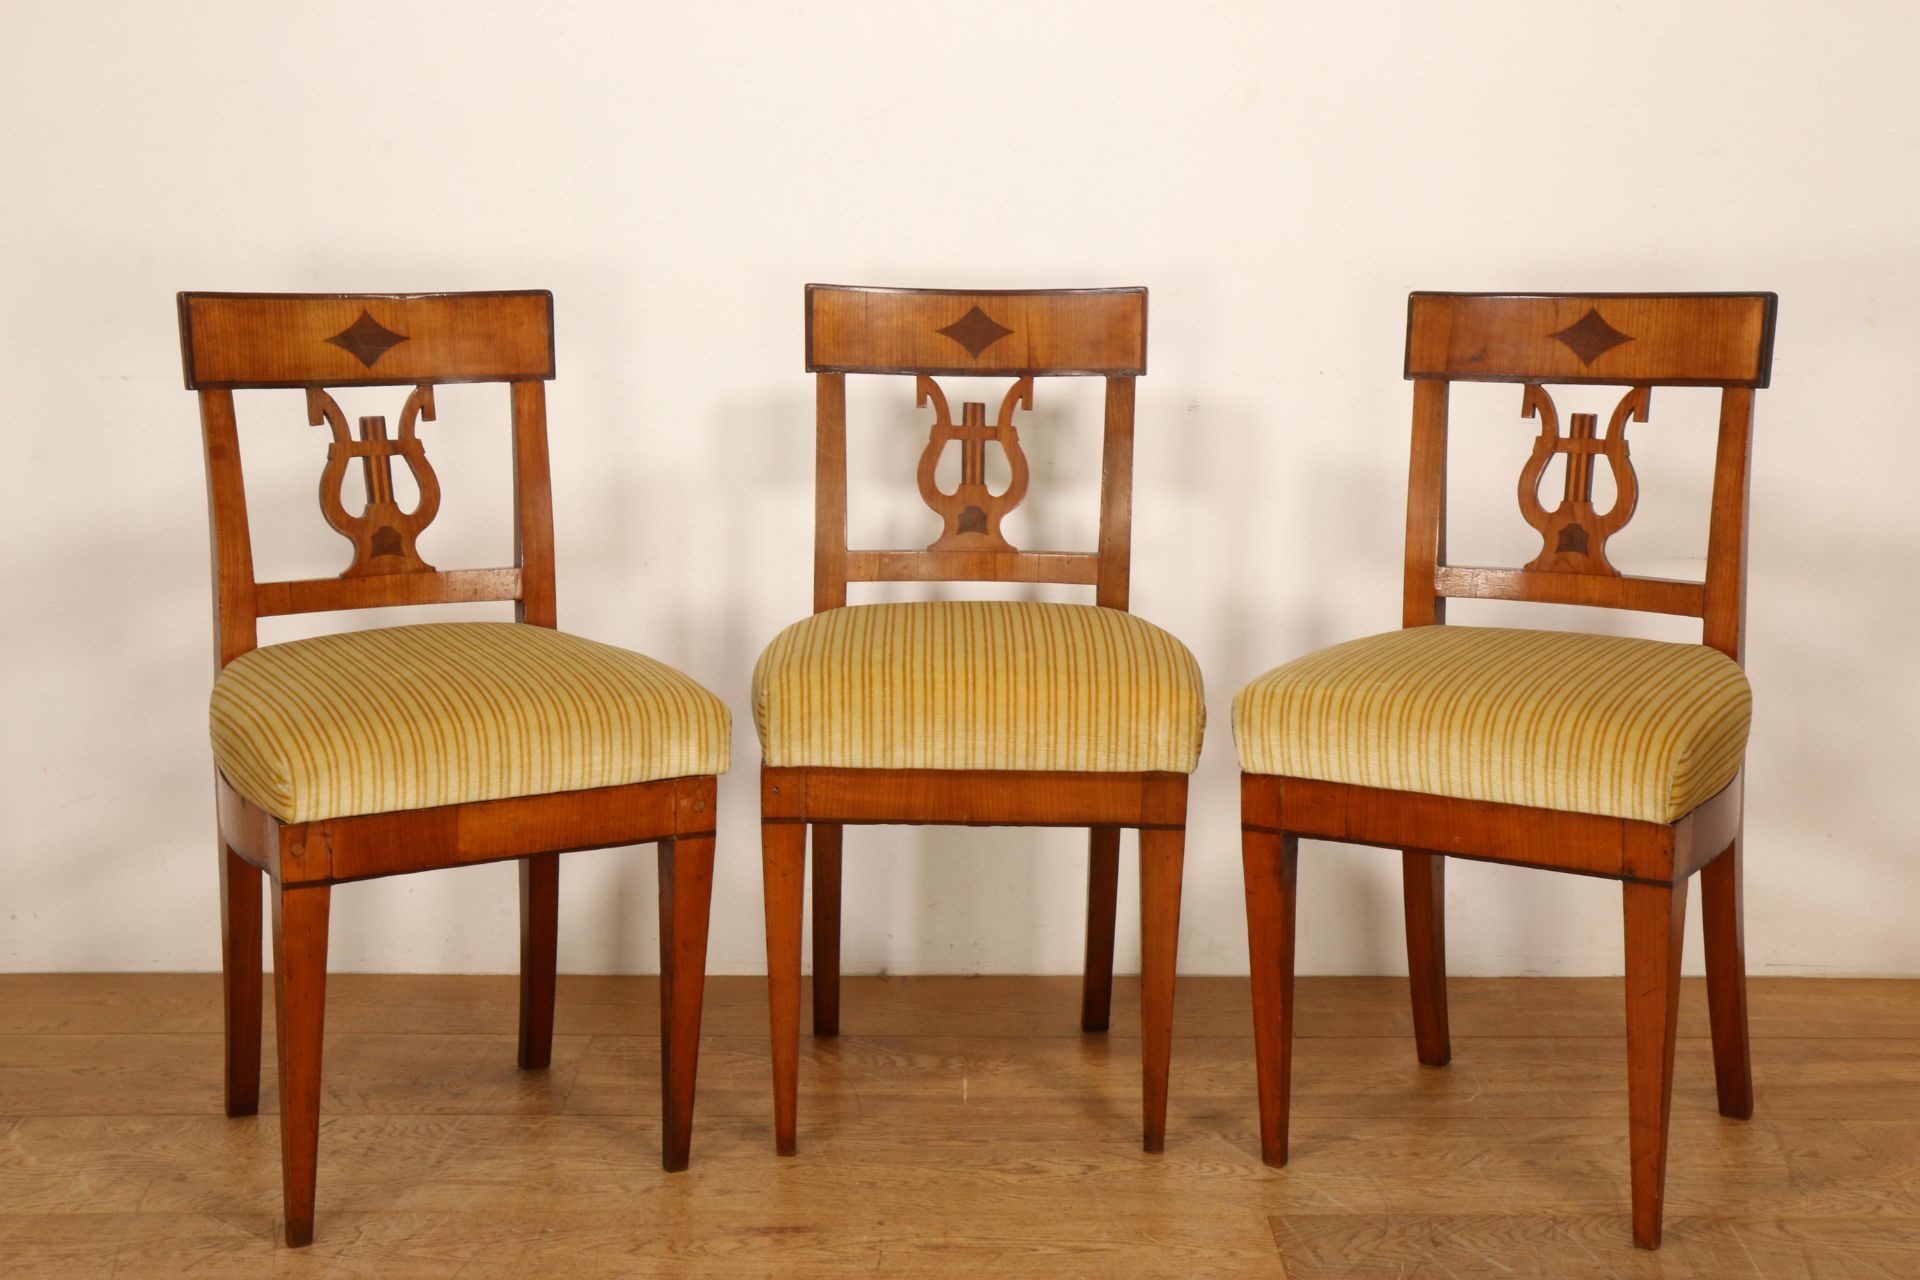 Zweden (?), set van vijf naaldhouten stoelen, ca. 1800, - Bild 3 aus 3